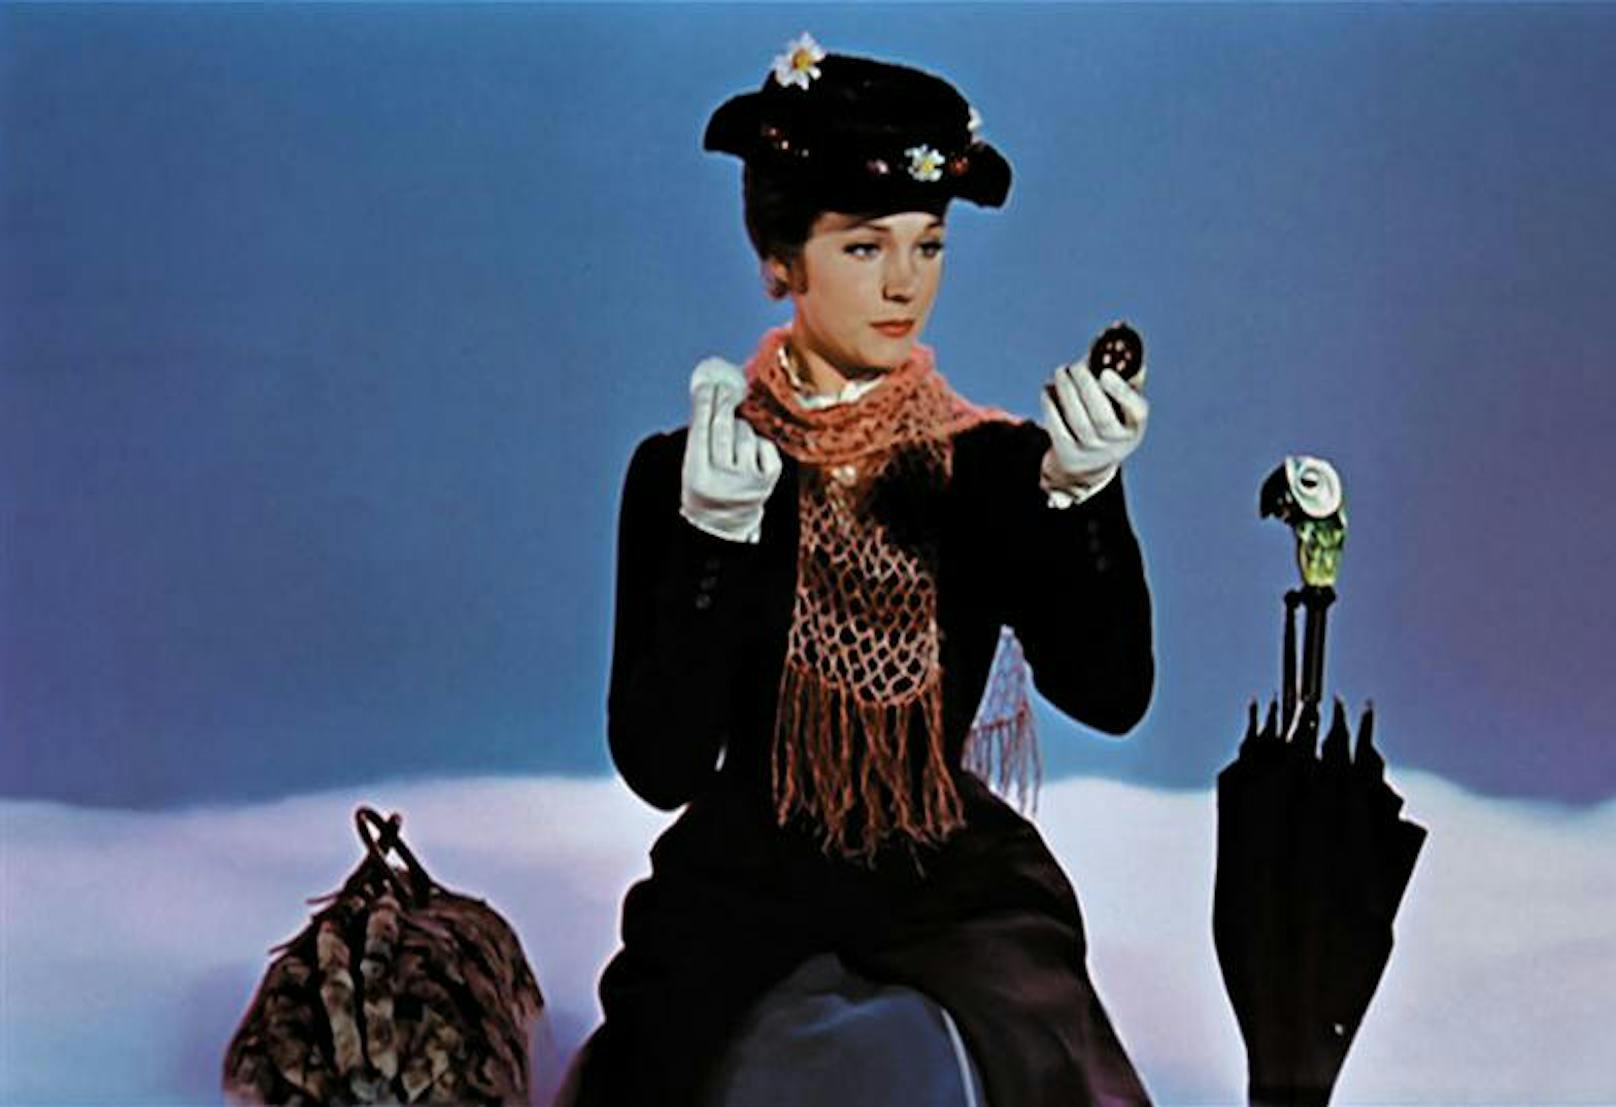 10.25 Uhr, ORF Eins: "Mary Poppins" (1964). Musical-Fantasyfilm über das zauberhafte Kindermädchen Mary Poppins. Mit Julie Andrews, Dick Van Dyke und Matthew Garber.